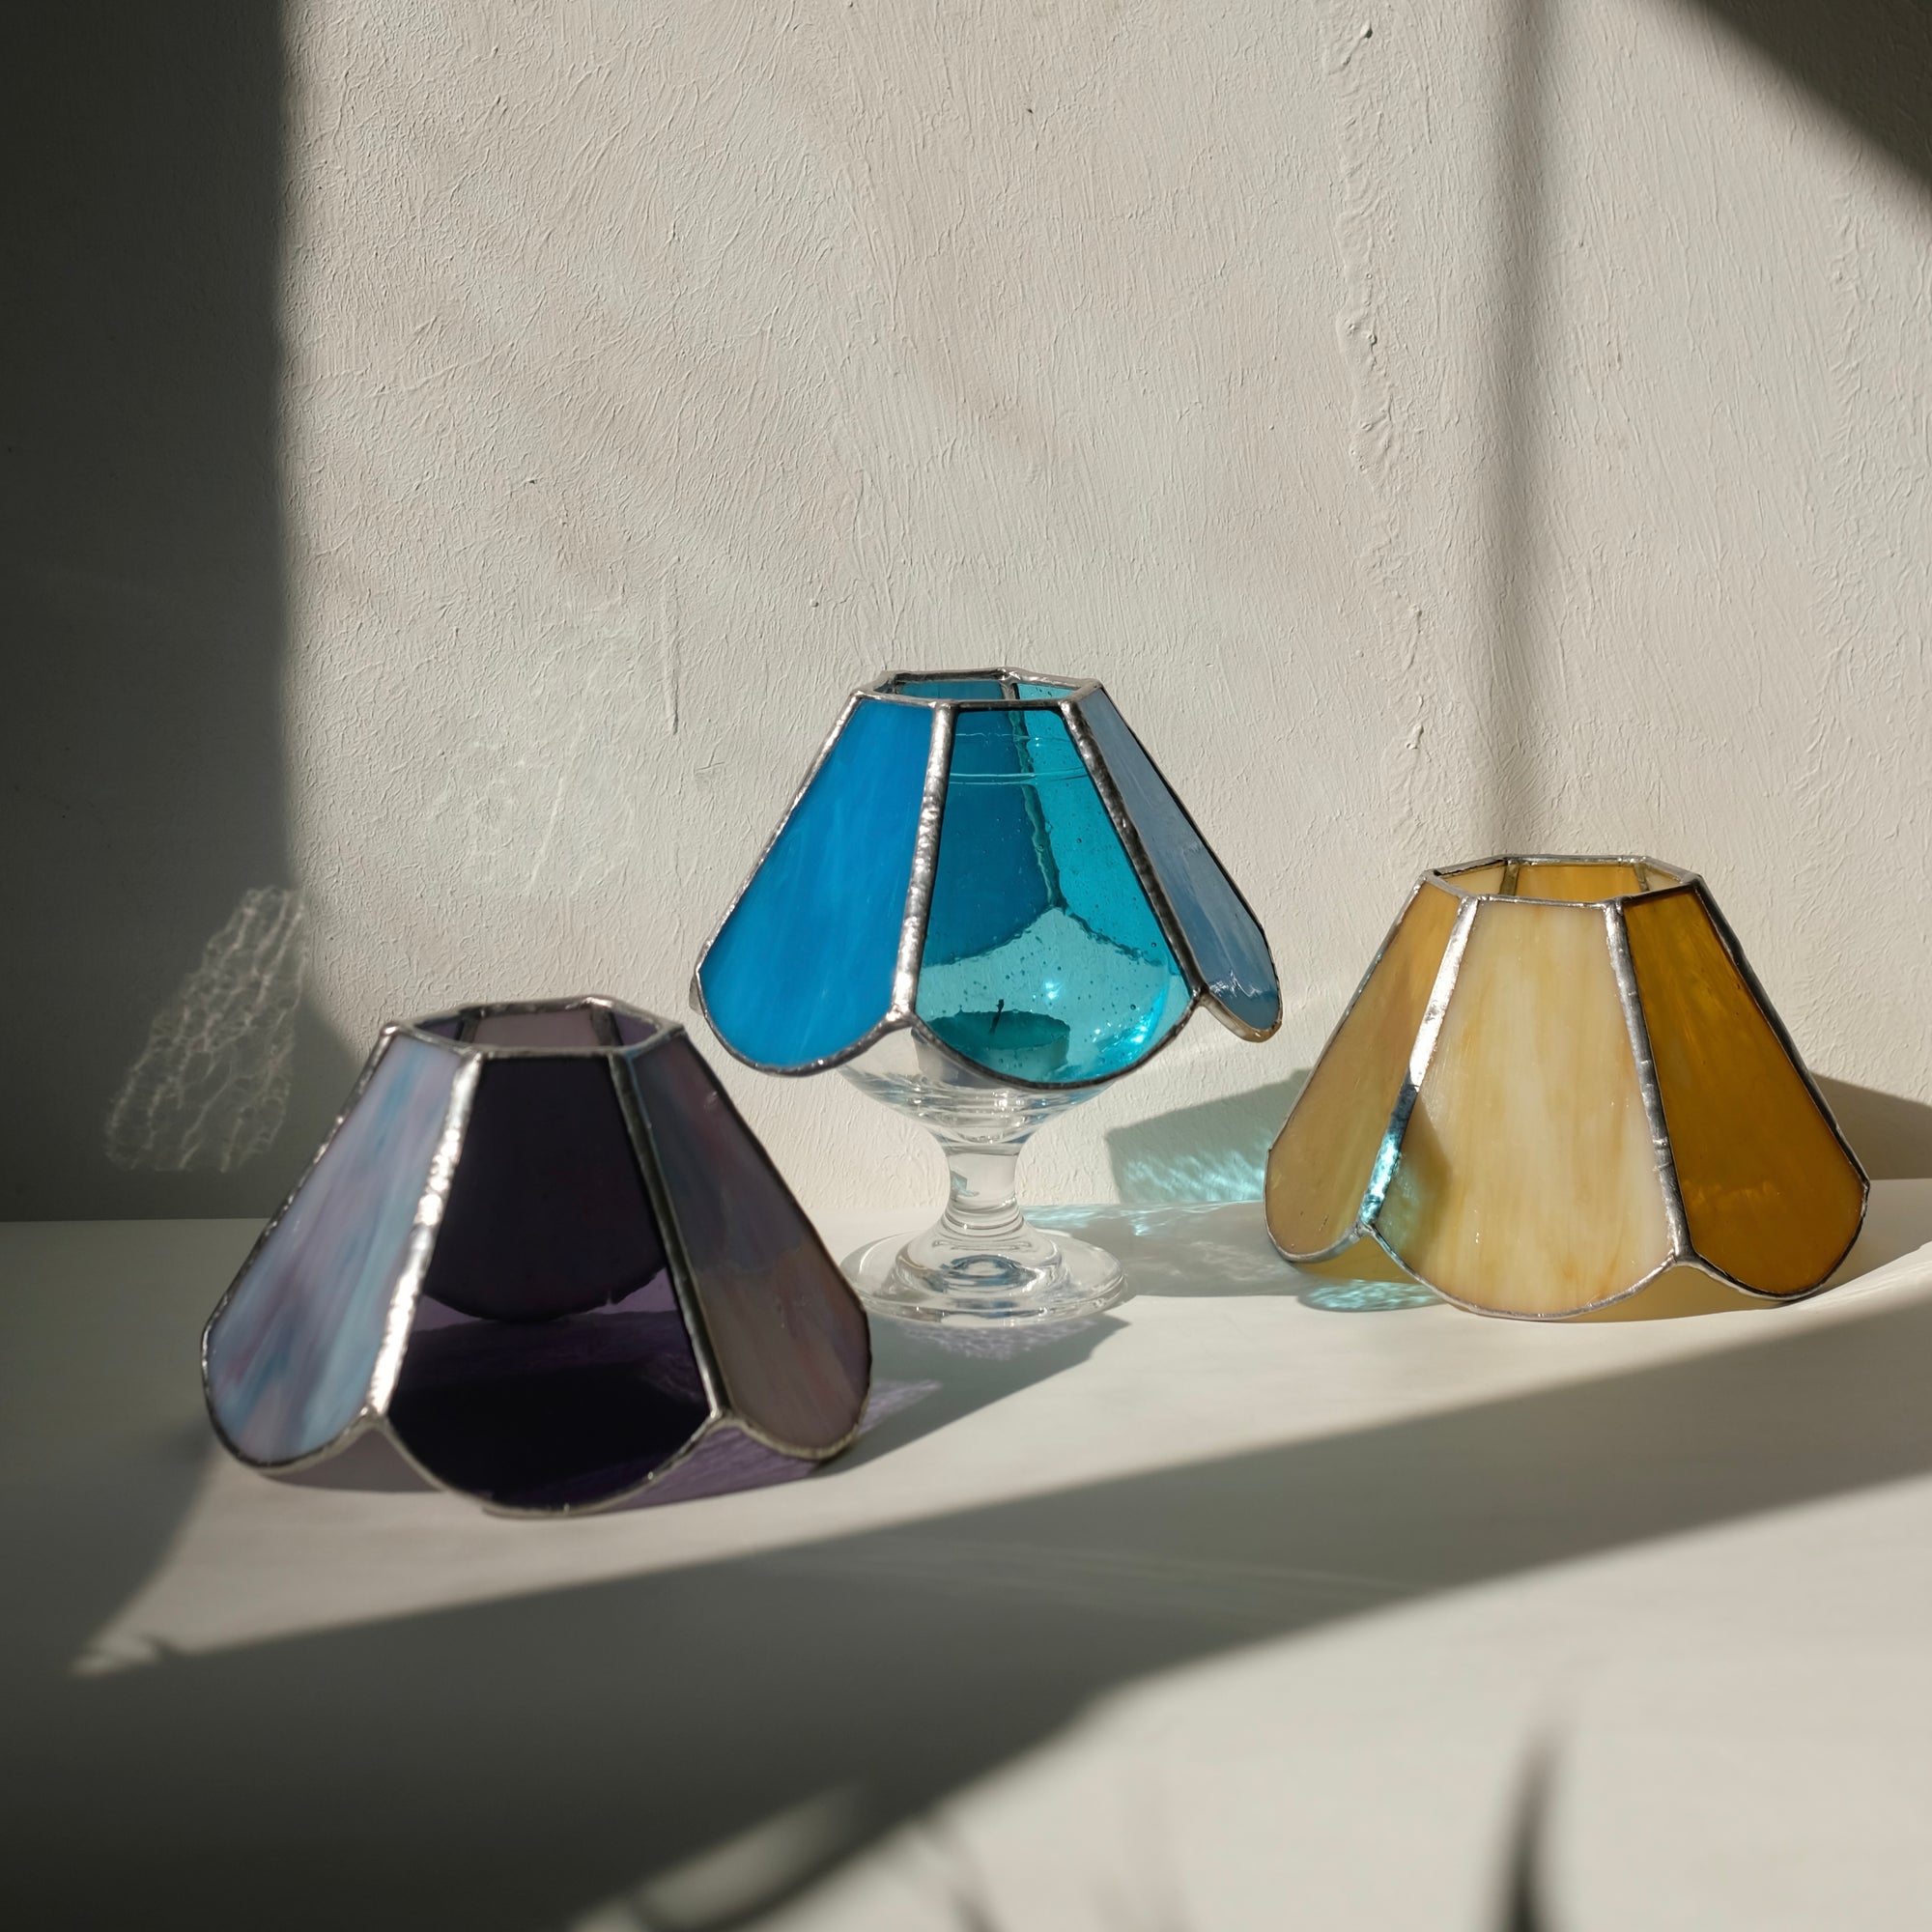 玻璃飾物工作坊 - 蠟燭燈 Stained Glass Workshop - Candle Lamp